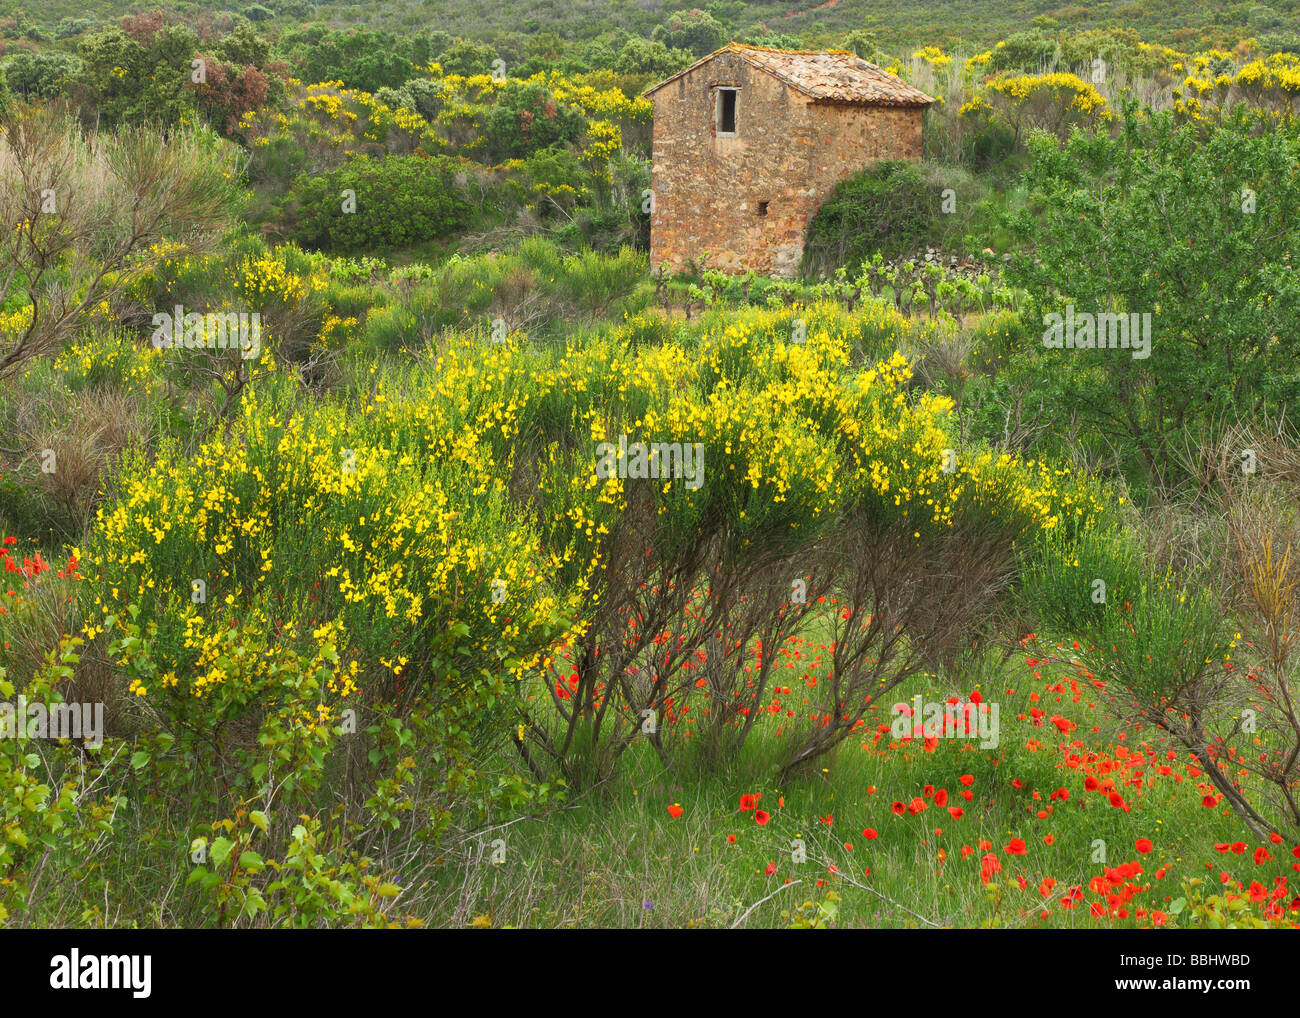 Vieille cabane en pierre dans une prairie au printemps Minervois Languedoc-Rousillon France Banque D'Images